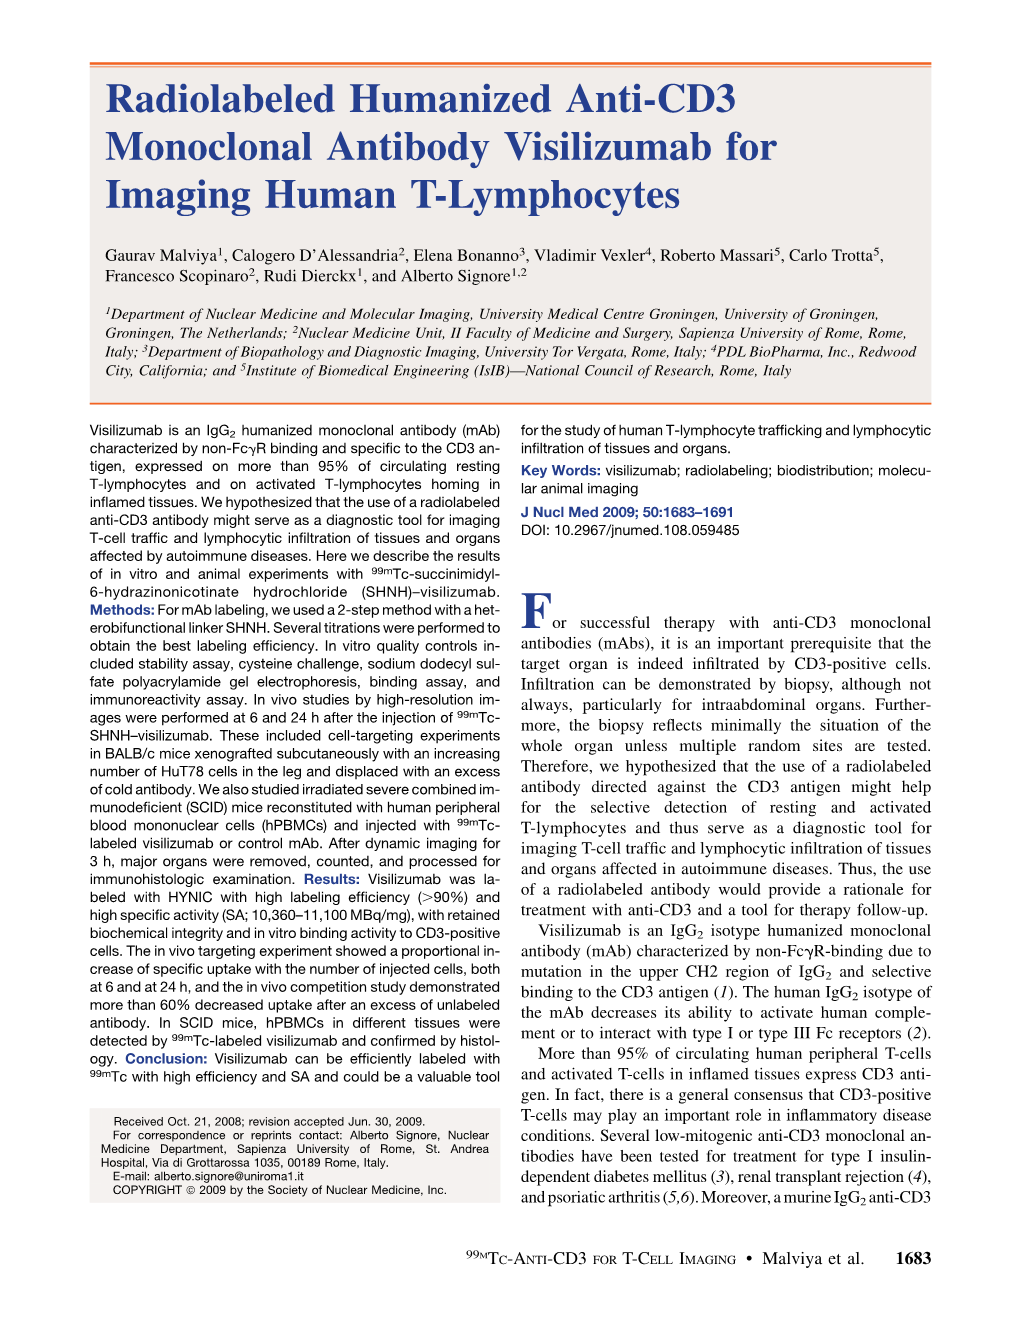 Radiolabeled Humanized Anti-CD3 Monoclonal Antibody Visilizumab for Imaging Human T-Lymphocytes